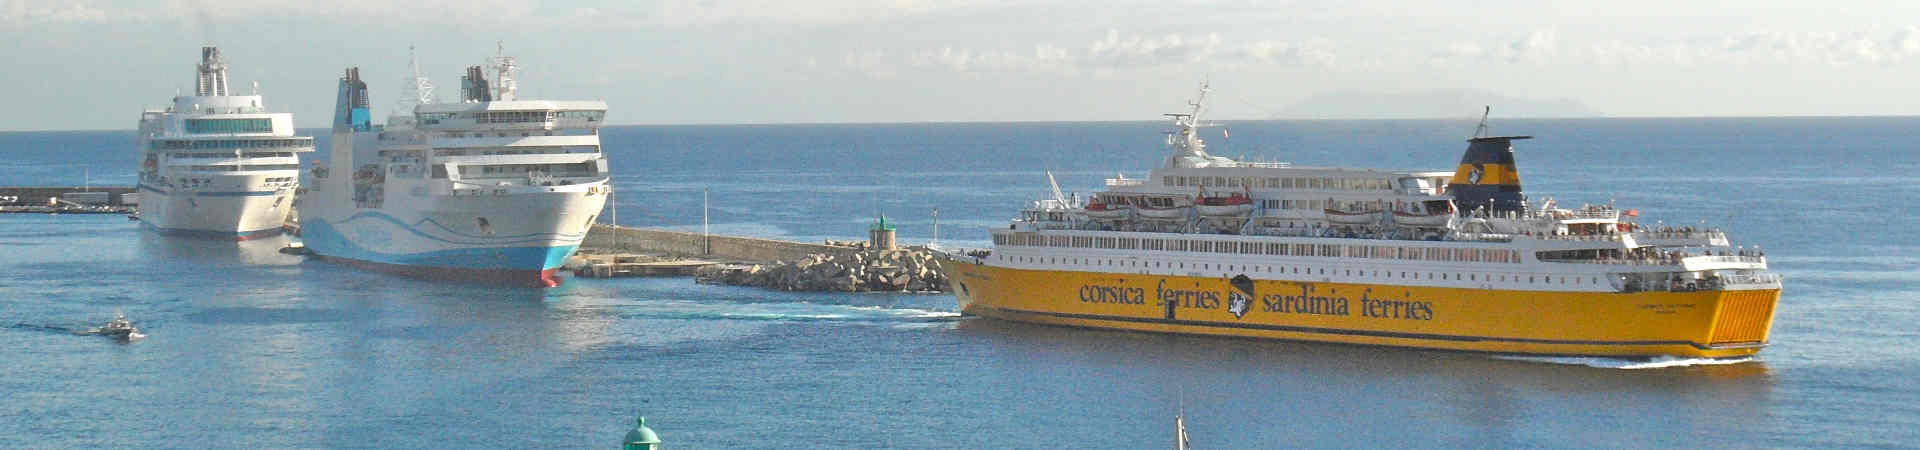 Immagine del porto di arrivo Porto Vecchio per la rotta traghetto Golfo Aranci - Porto Vecchio